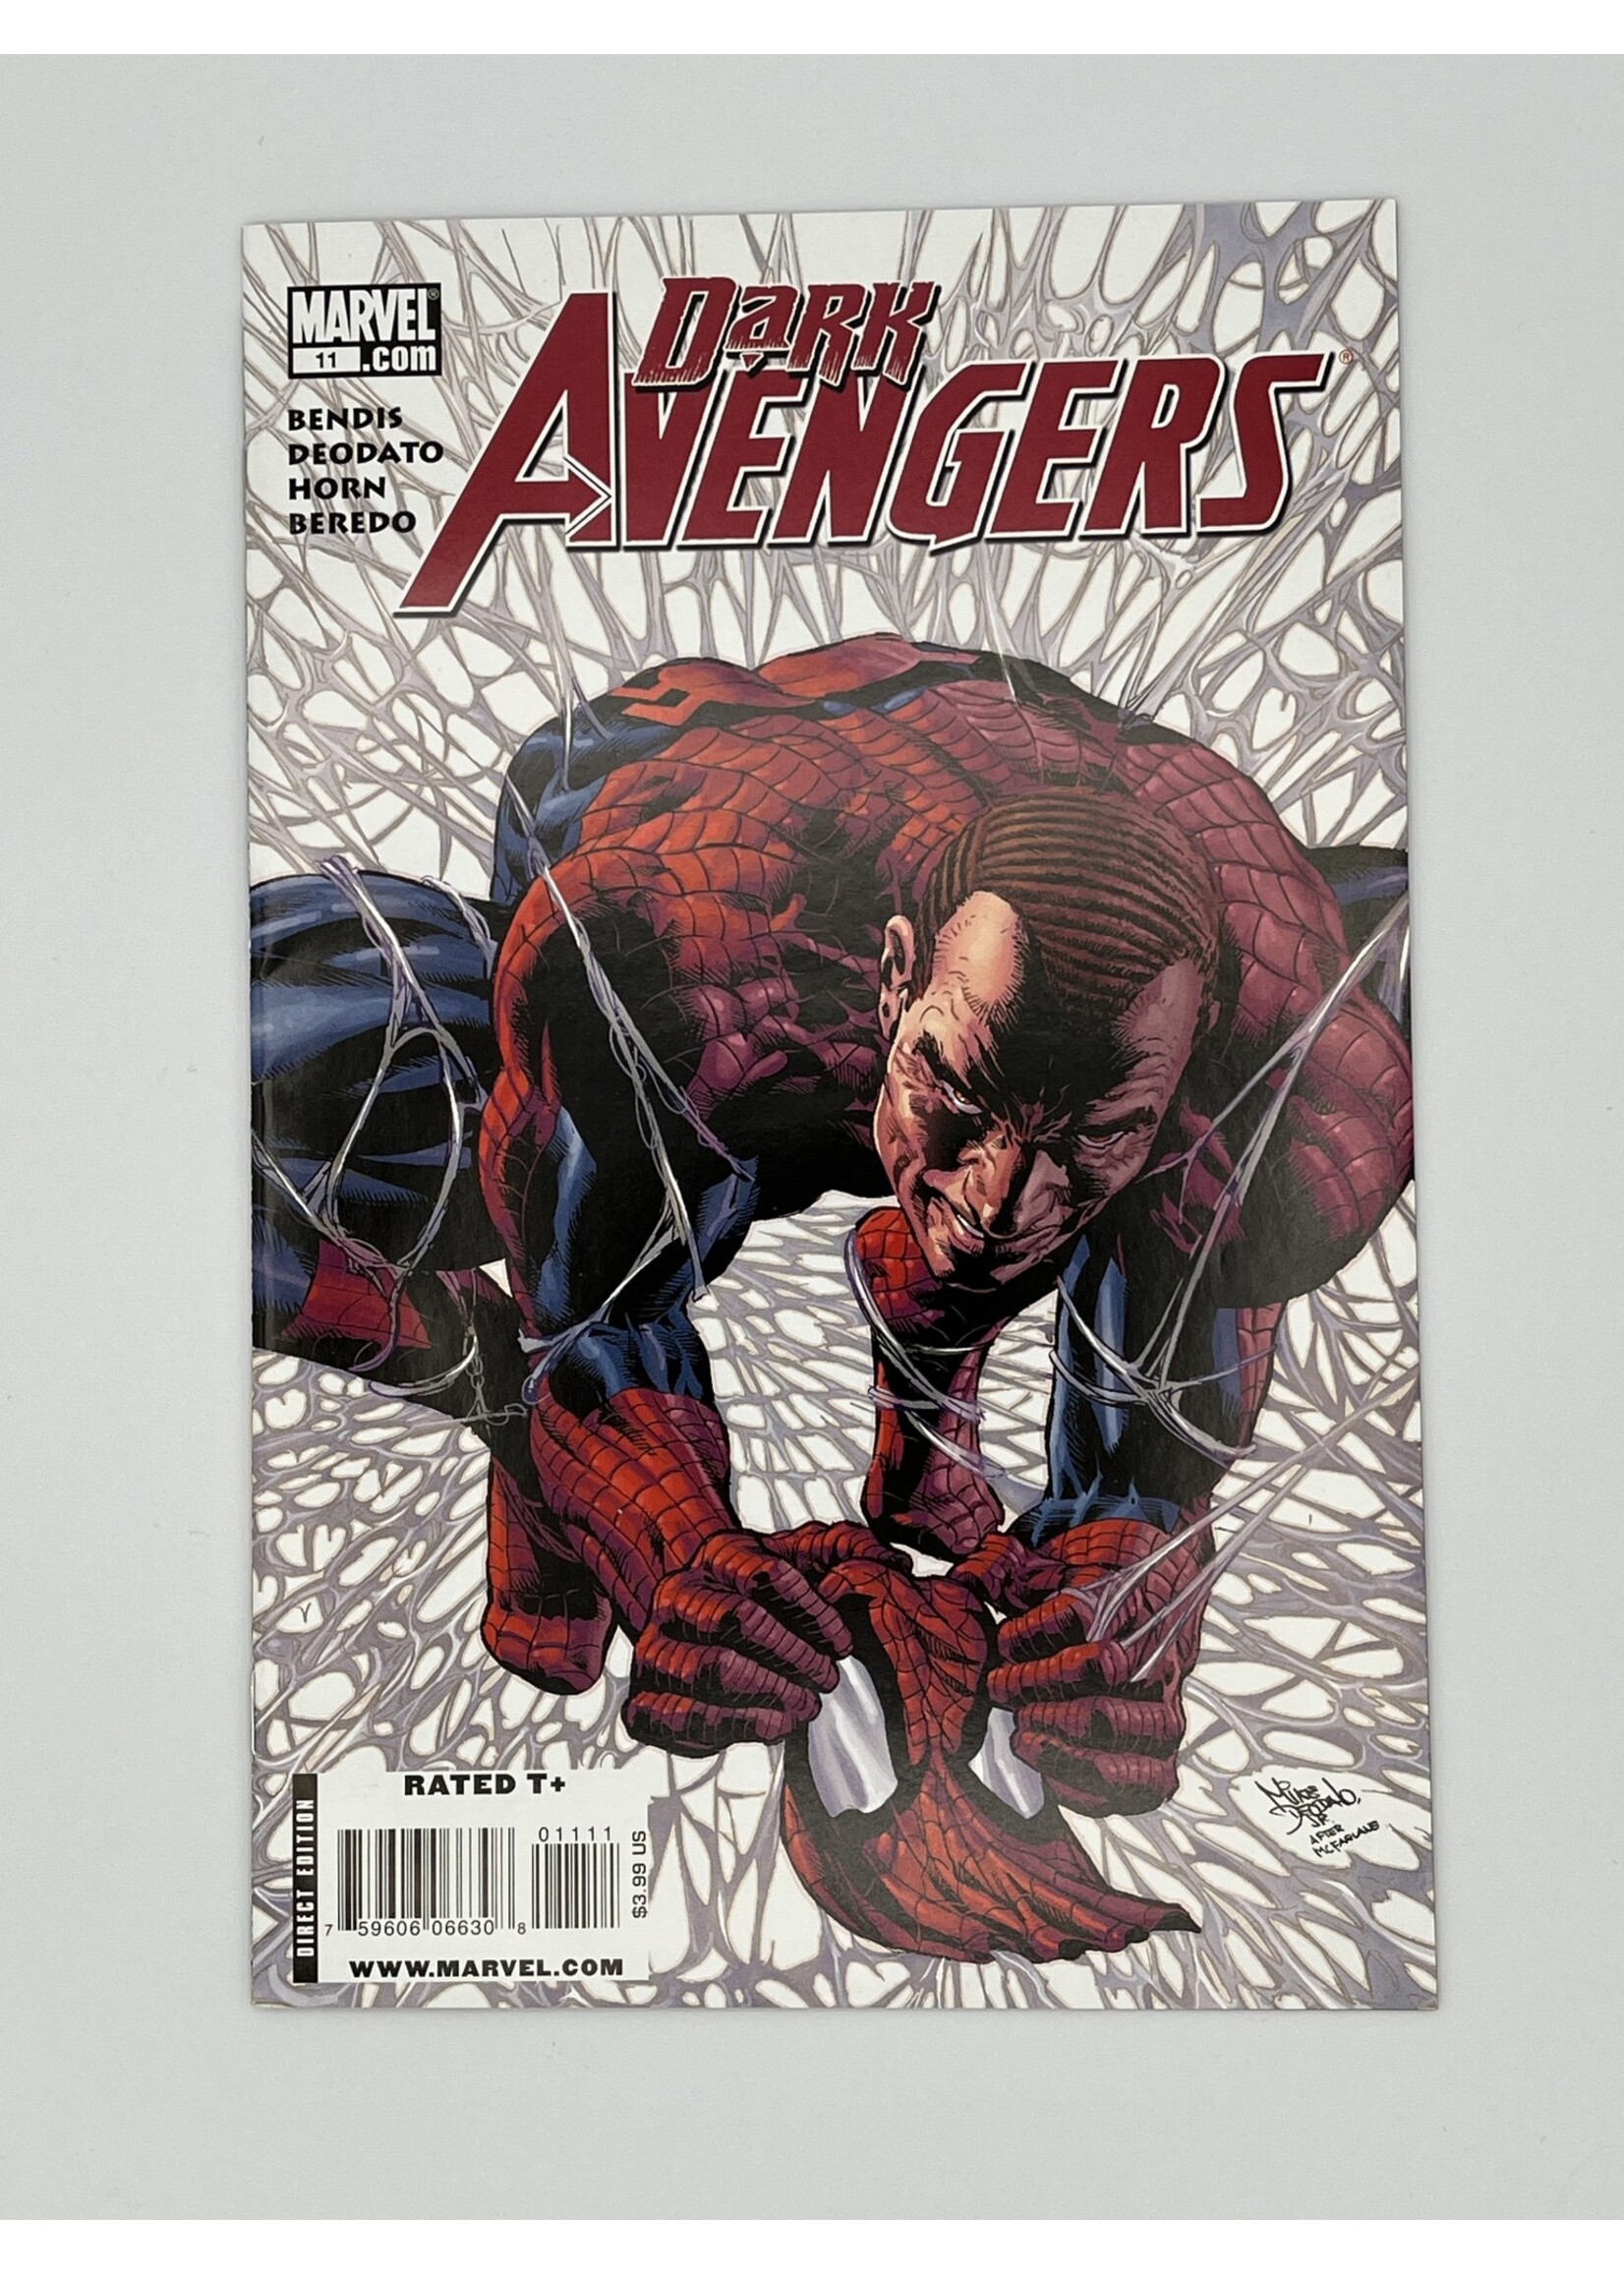 Marvel   DARK AVENGERS #11 Marvel January 2010